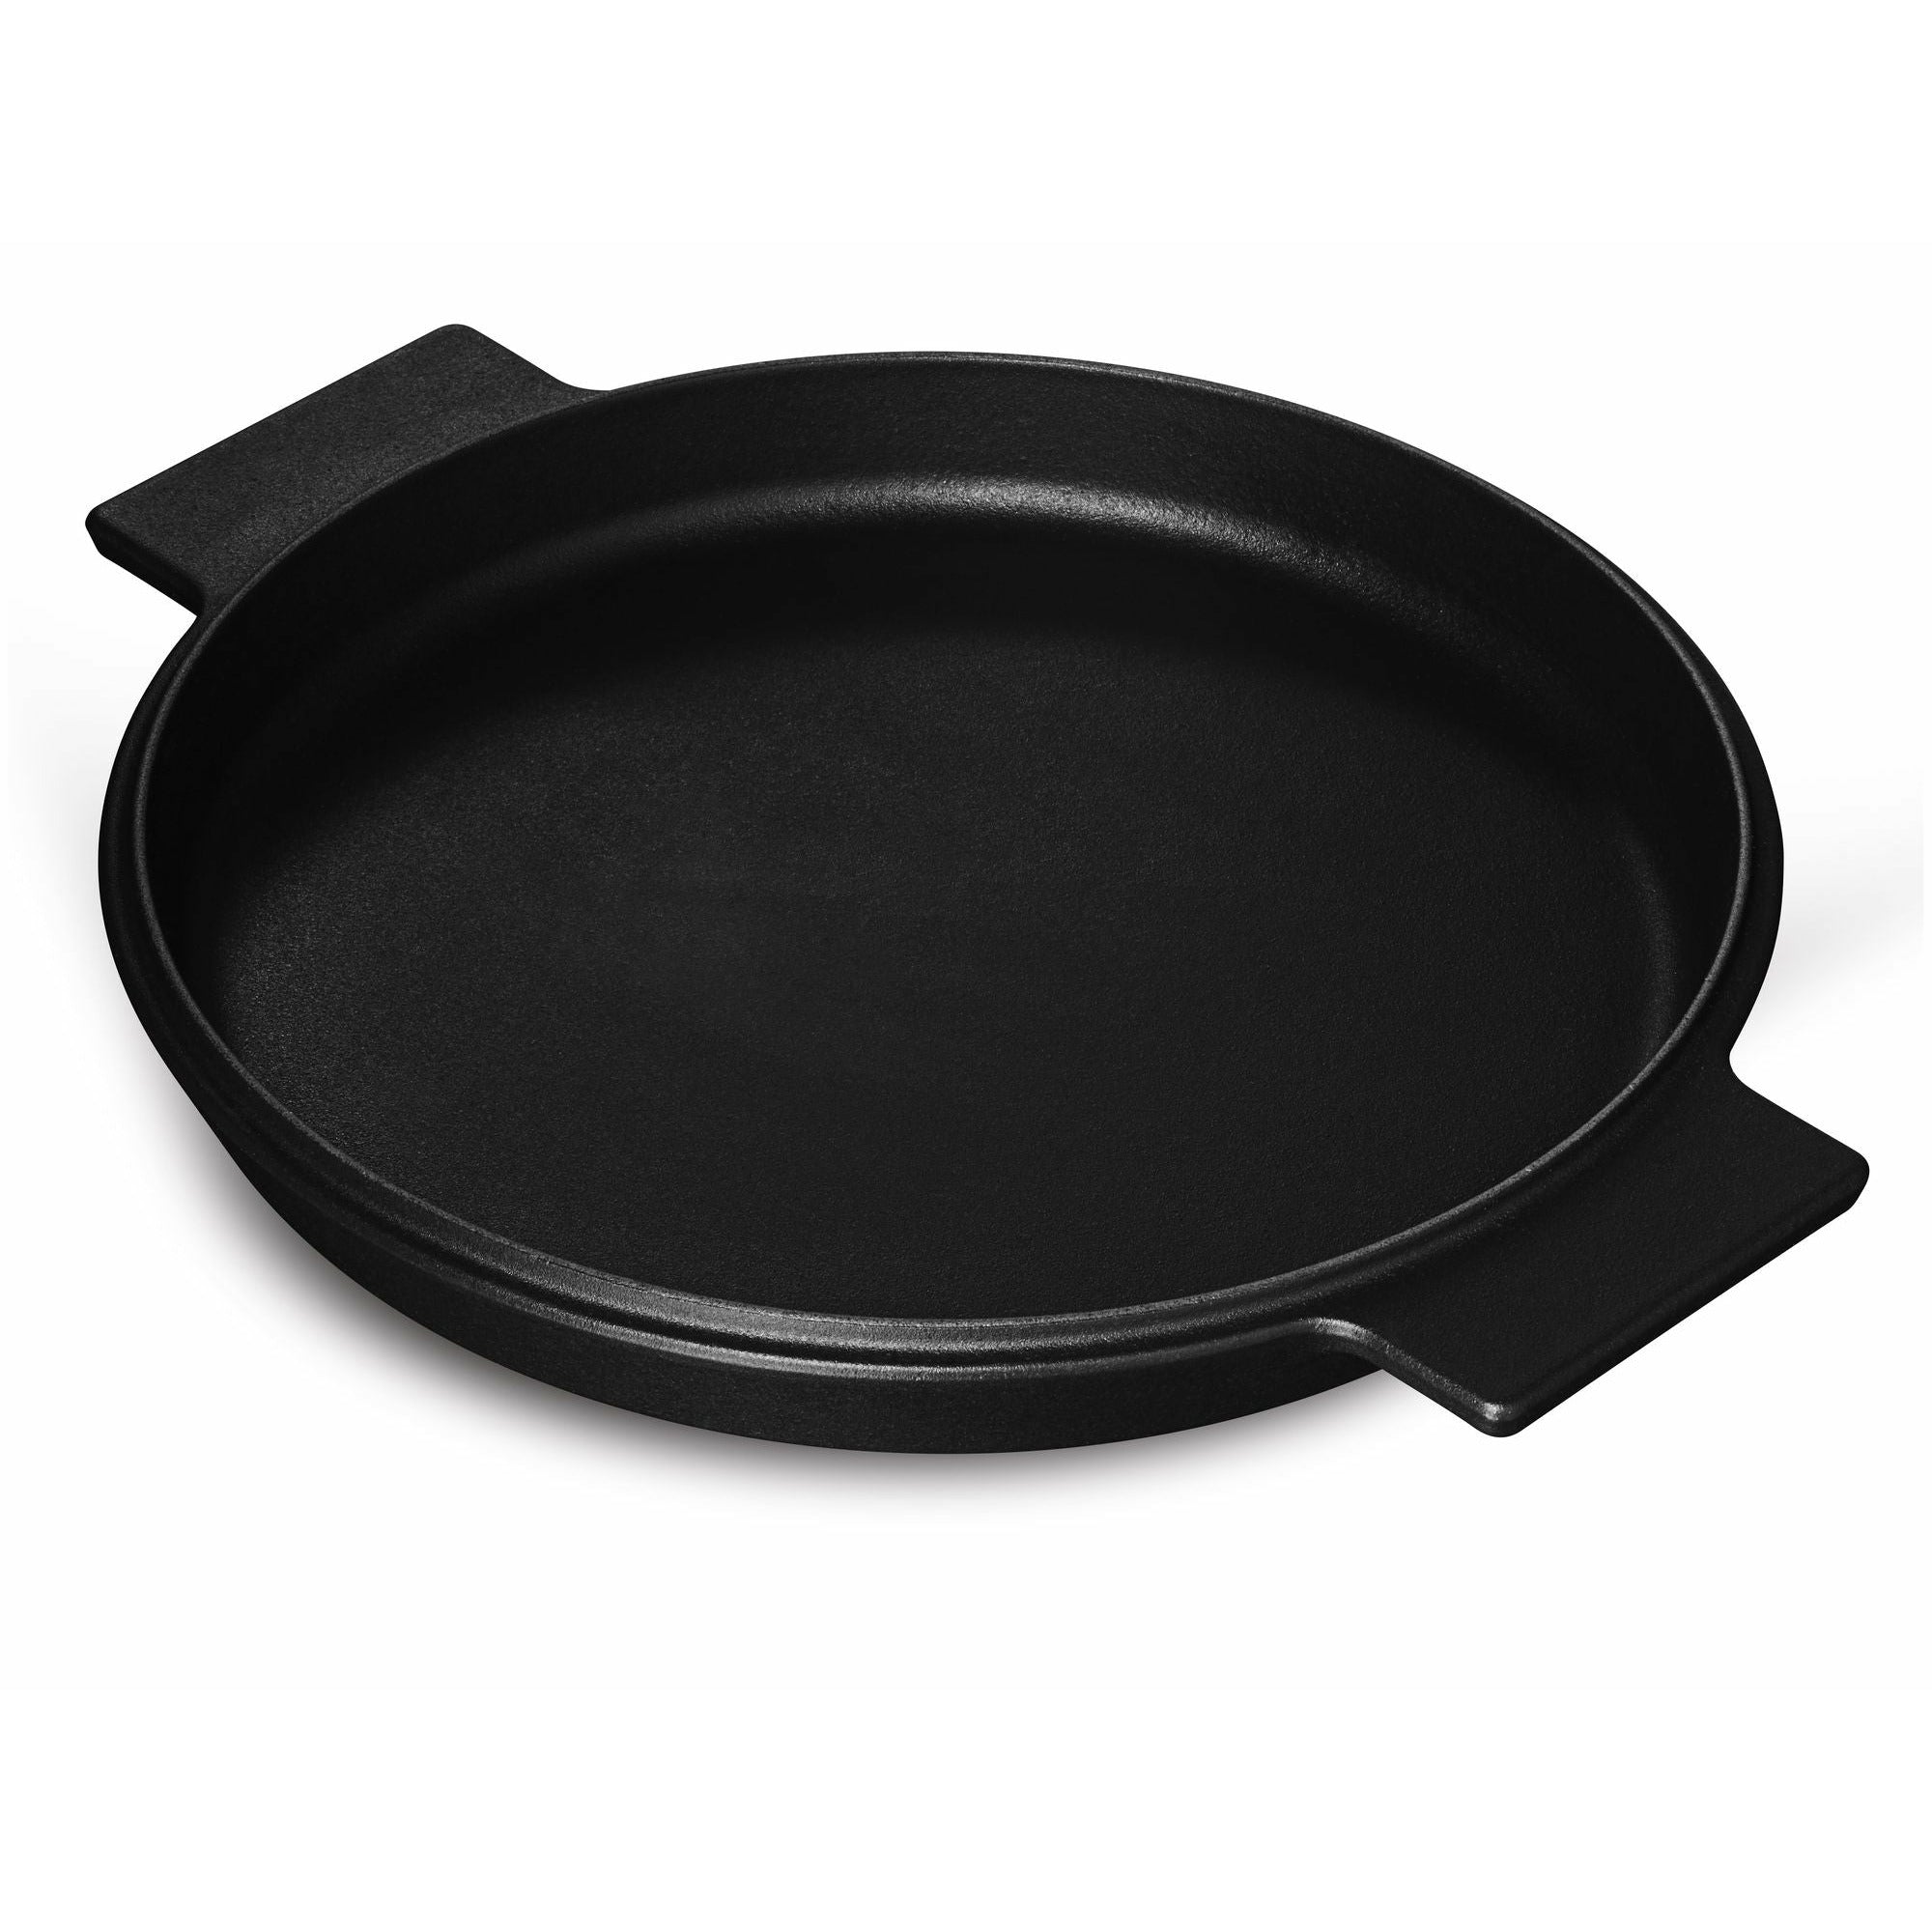 Morsø NAC Frying Pan, 28 cm